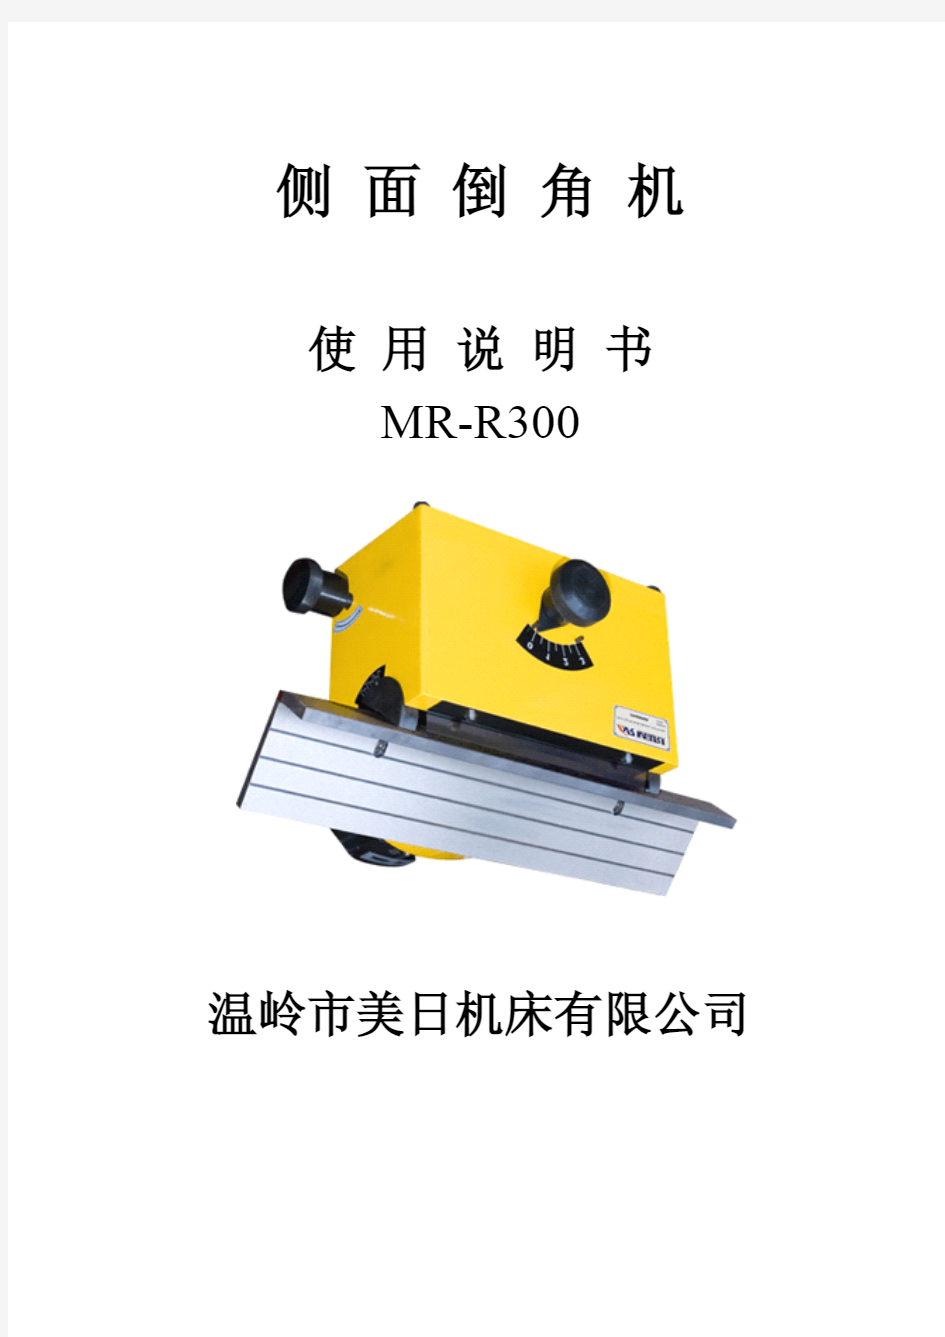 温岭市美日机床有限公司,侧面倒角机,MR-R300,使用说明书